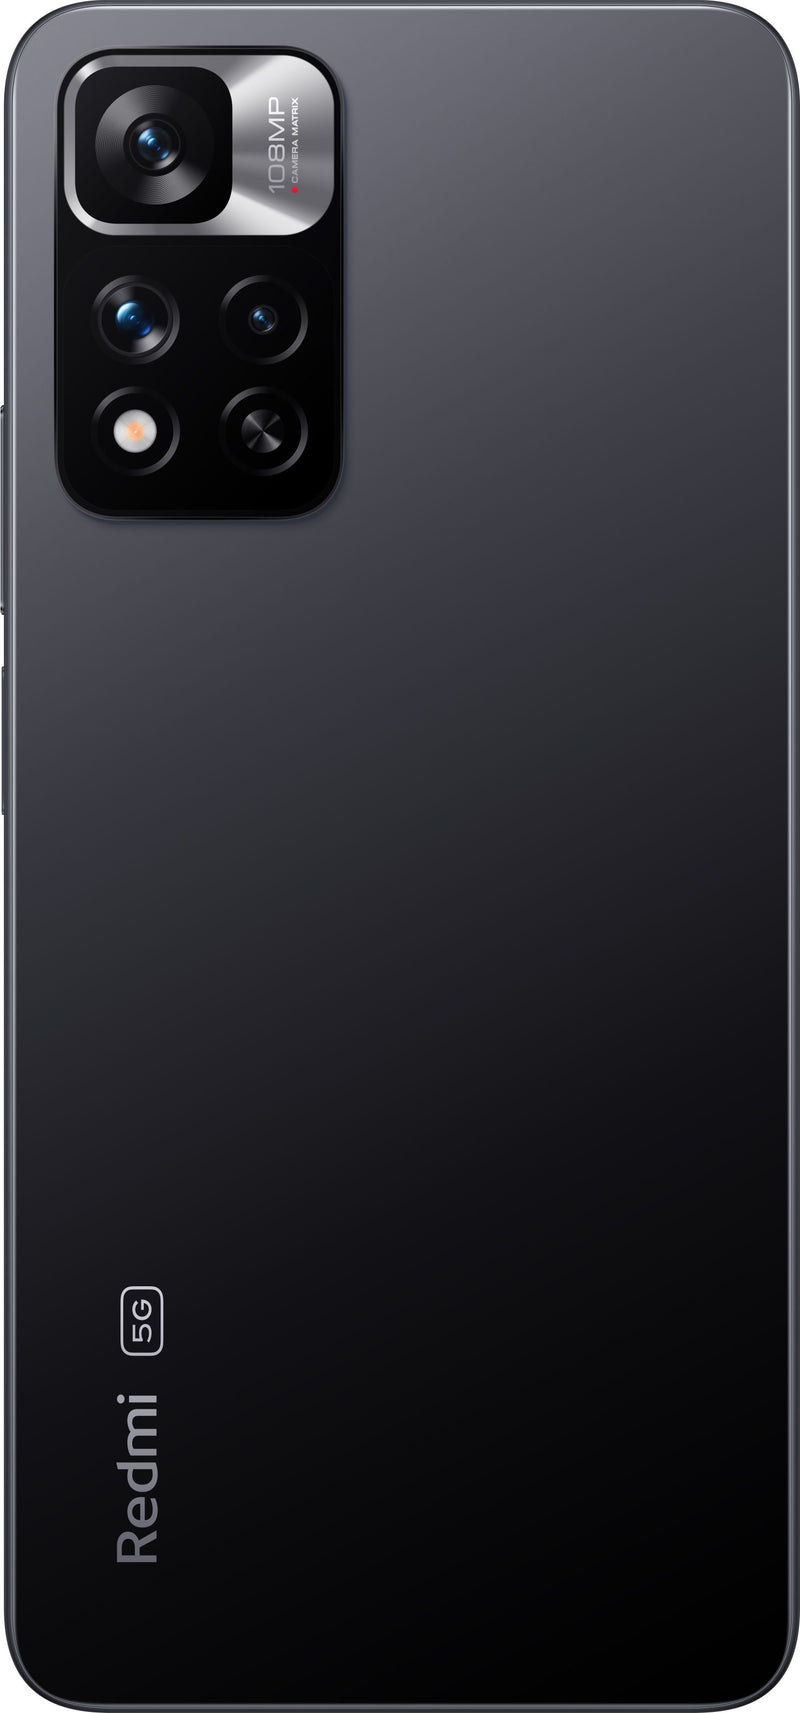 Redmi Note 11 Pro+ 5G Smartphone